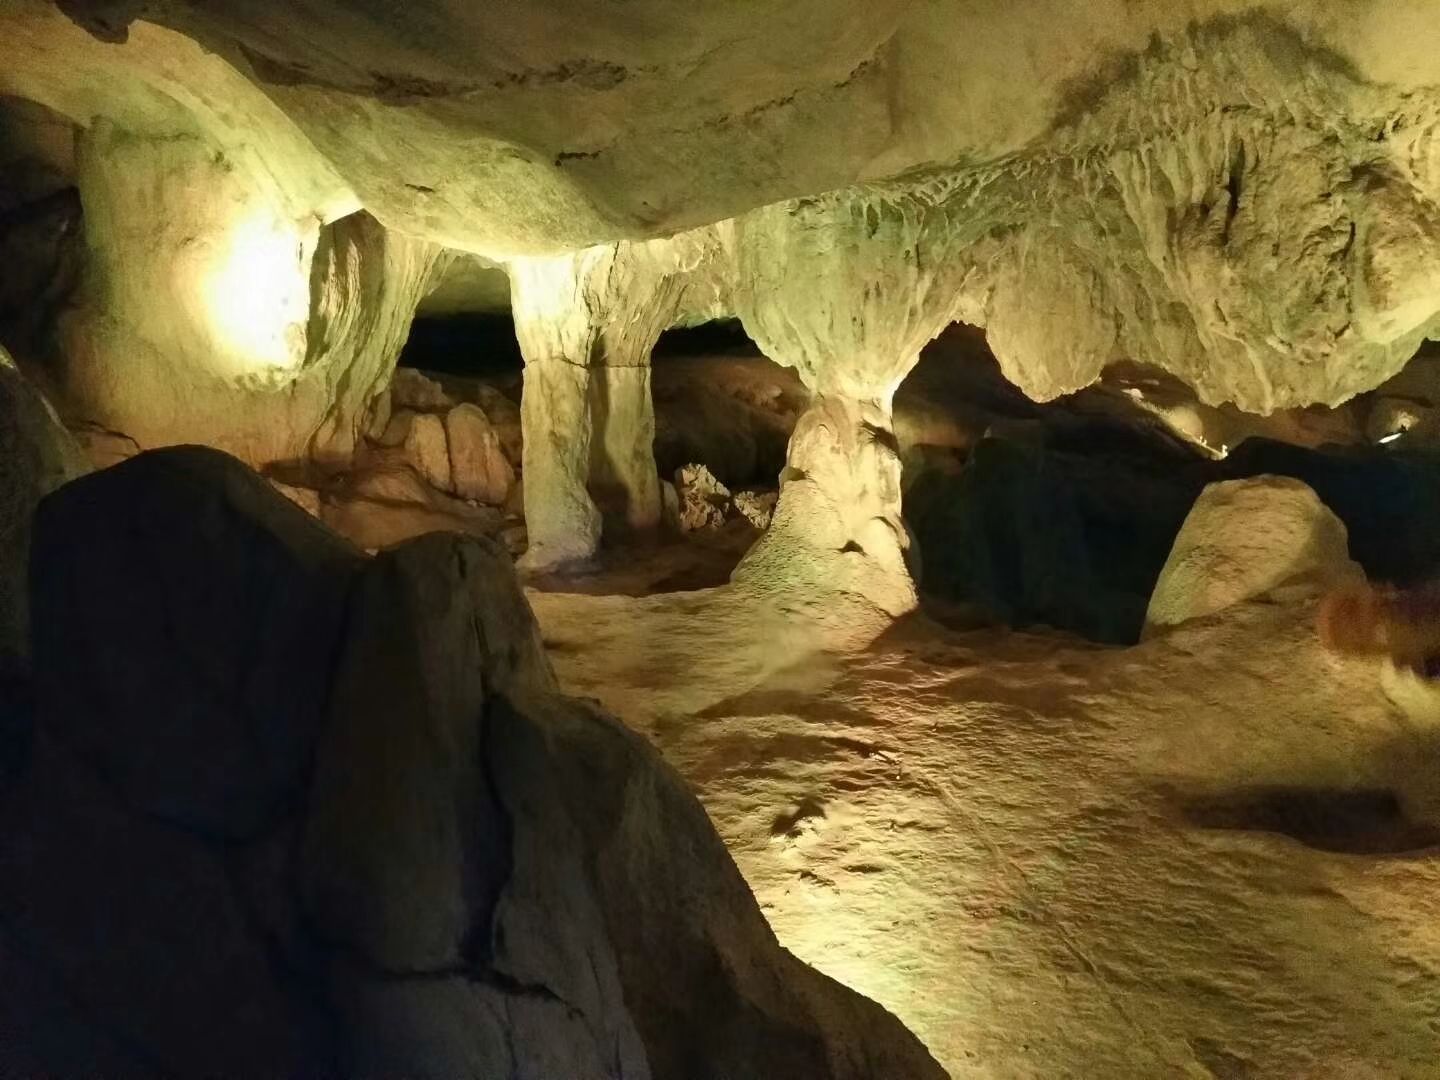 美翻了！盘点全球 20 个最美天然洞穴，简直是人间仙境 - 盐疗_洞穴盐疗_盐疗加盟_盐疗房_盐疗屋_深滤空间SaltSpace